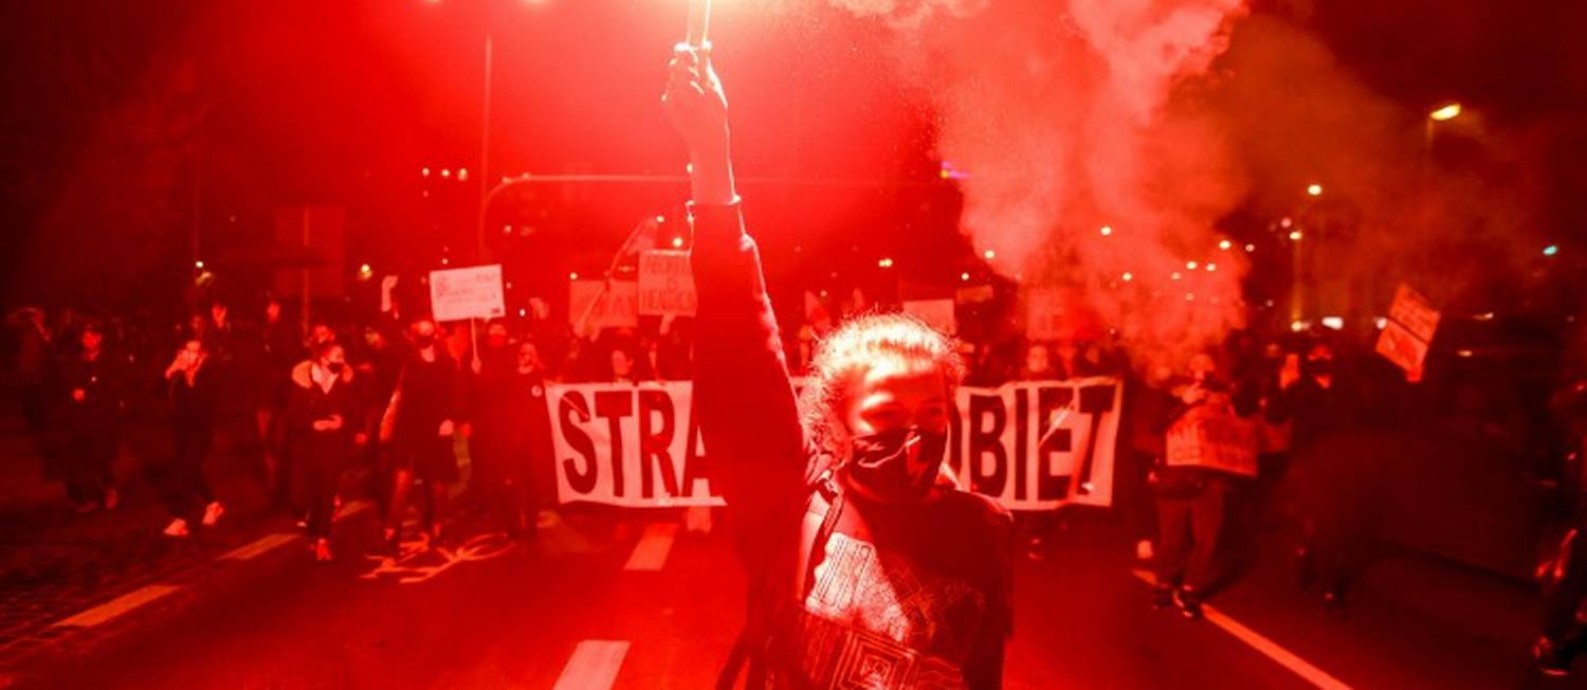 Manifestante segura sinalizador durante protesto contra limitação do aborto na Polônia Foto: AGENCJA GAZETA / via REUTERS / 26-10-2020